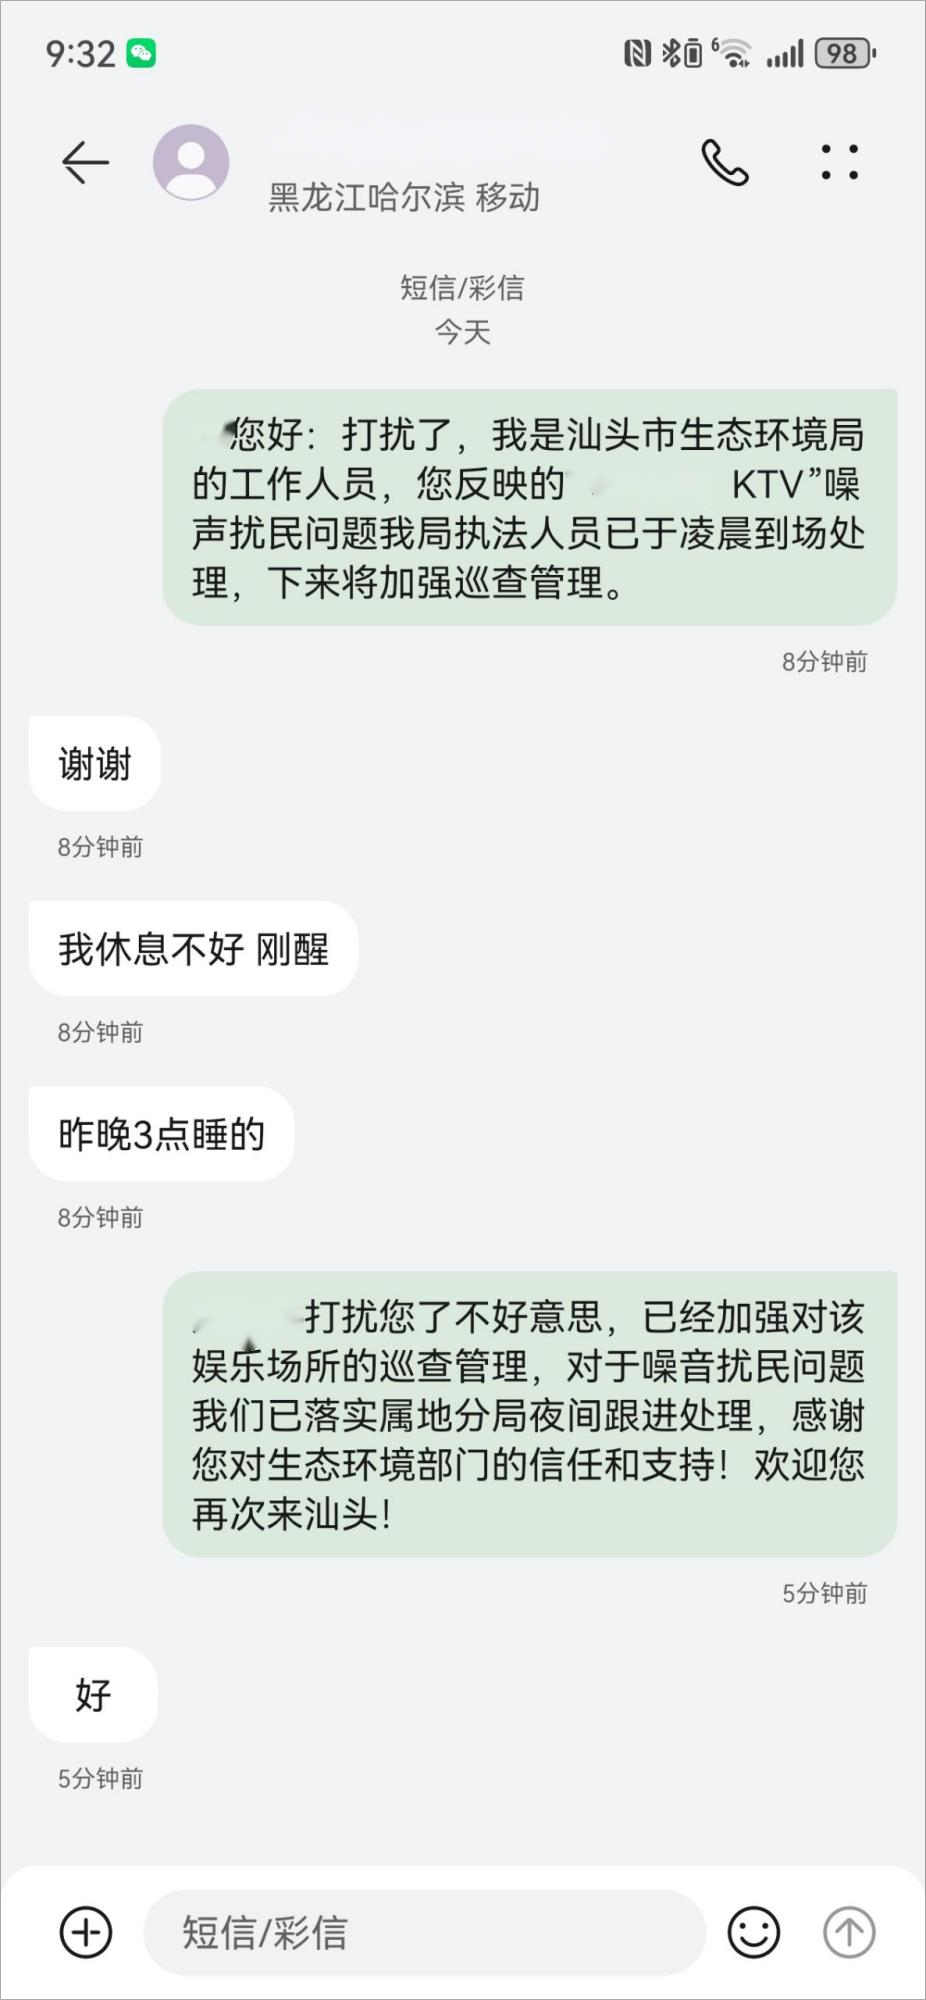 潮阳某酒店KTV,被外省游客投诉...